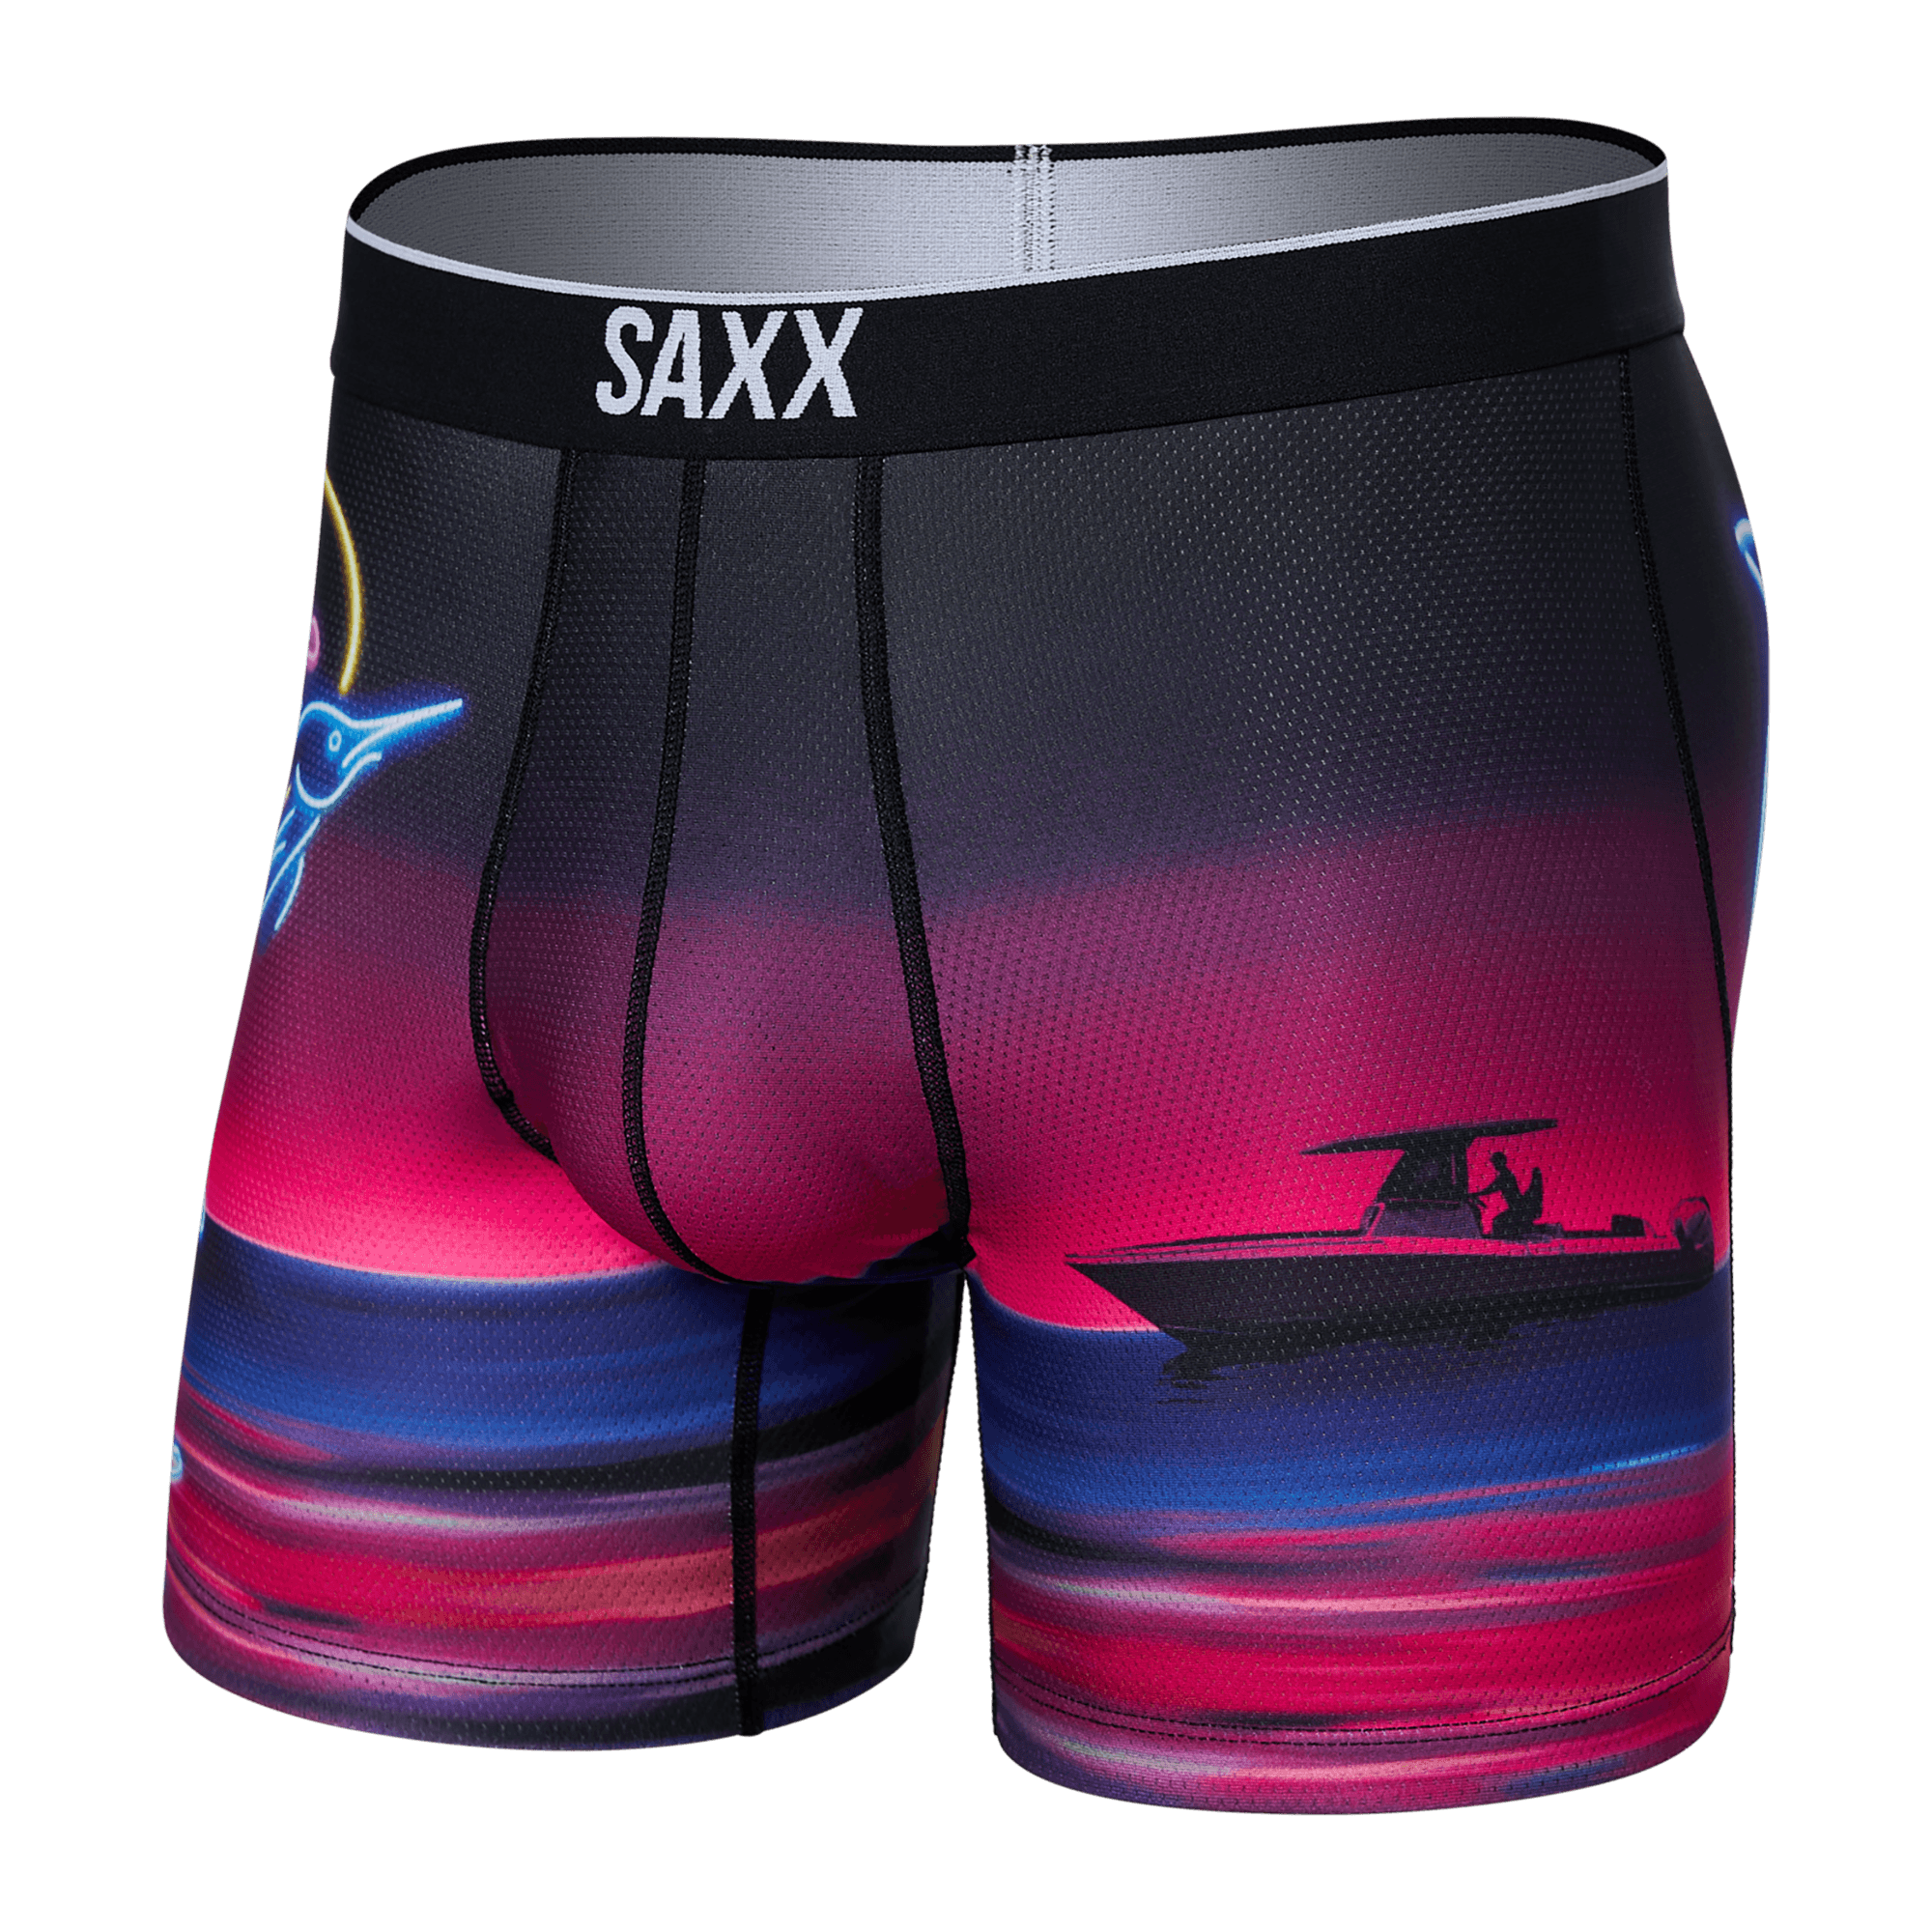 Premium Printed Underwear in Box Jellyfish